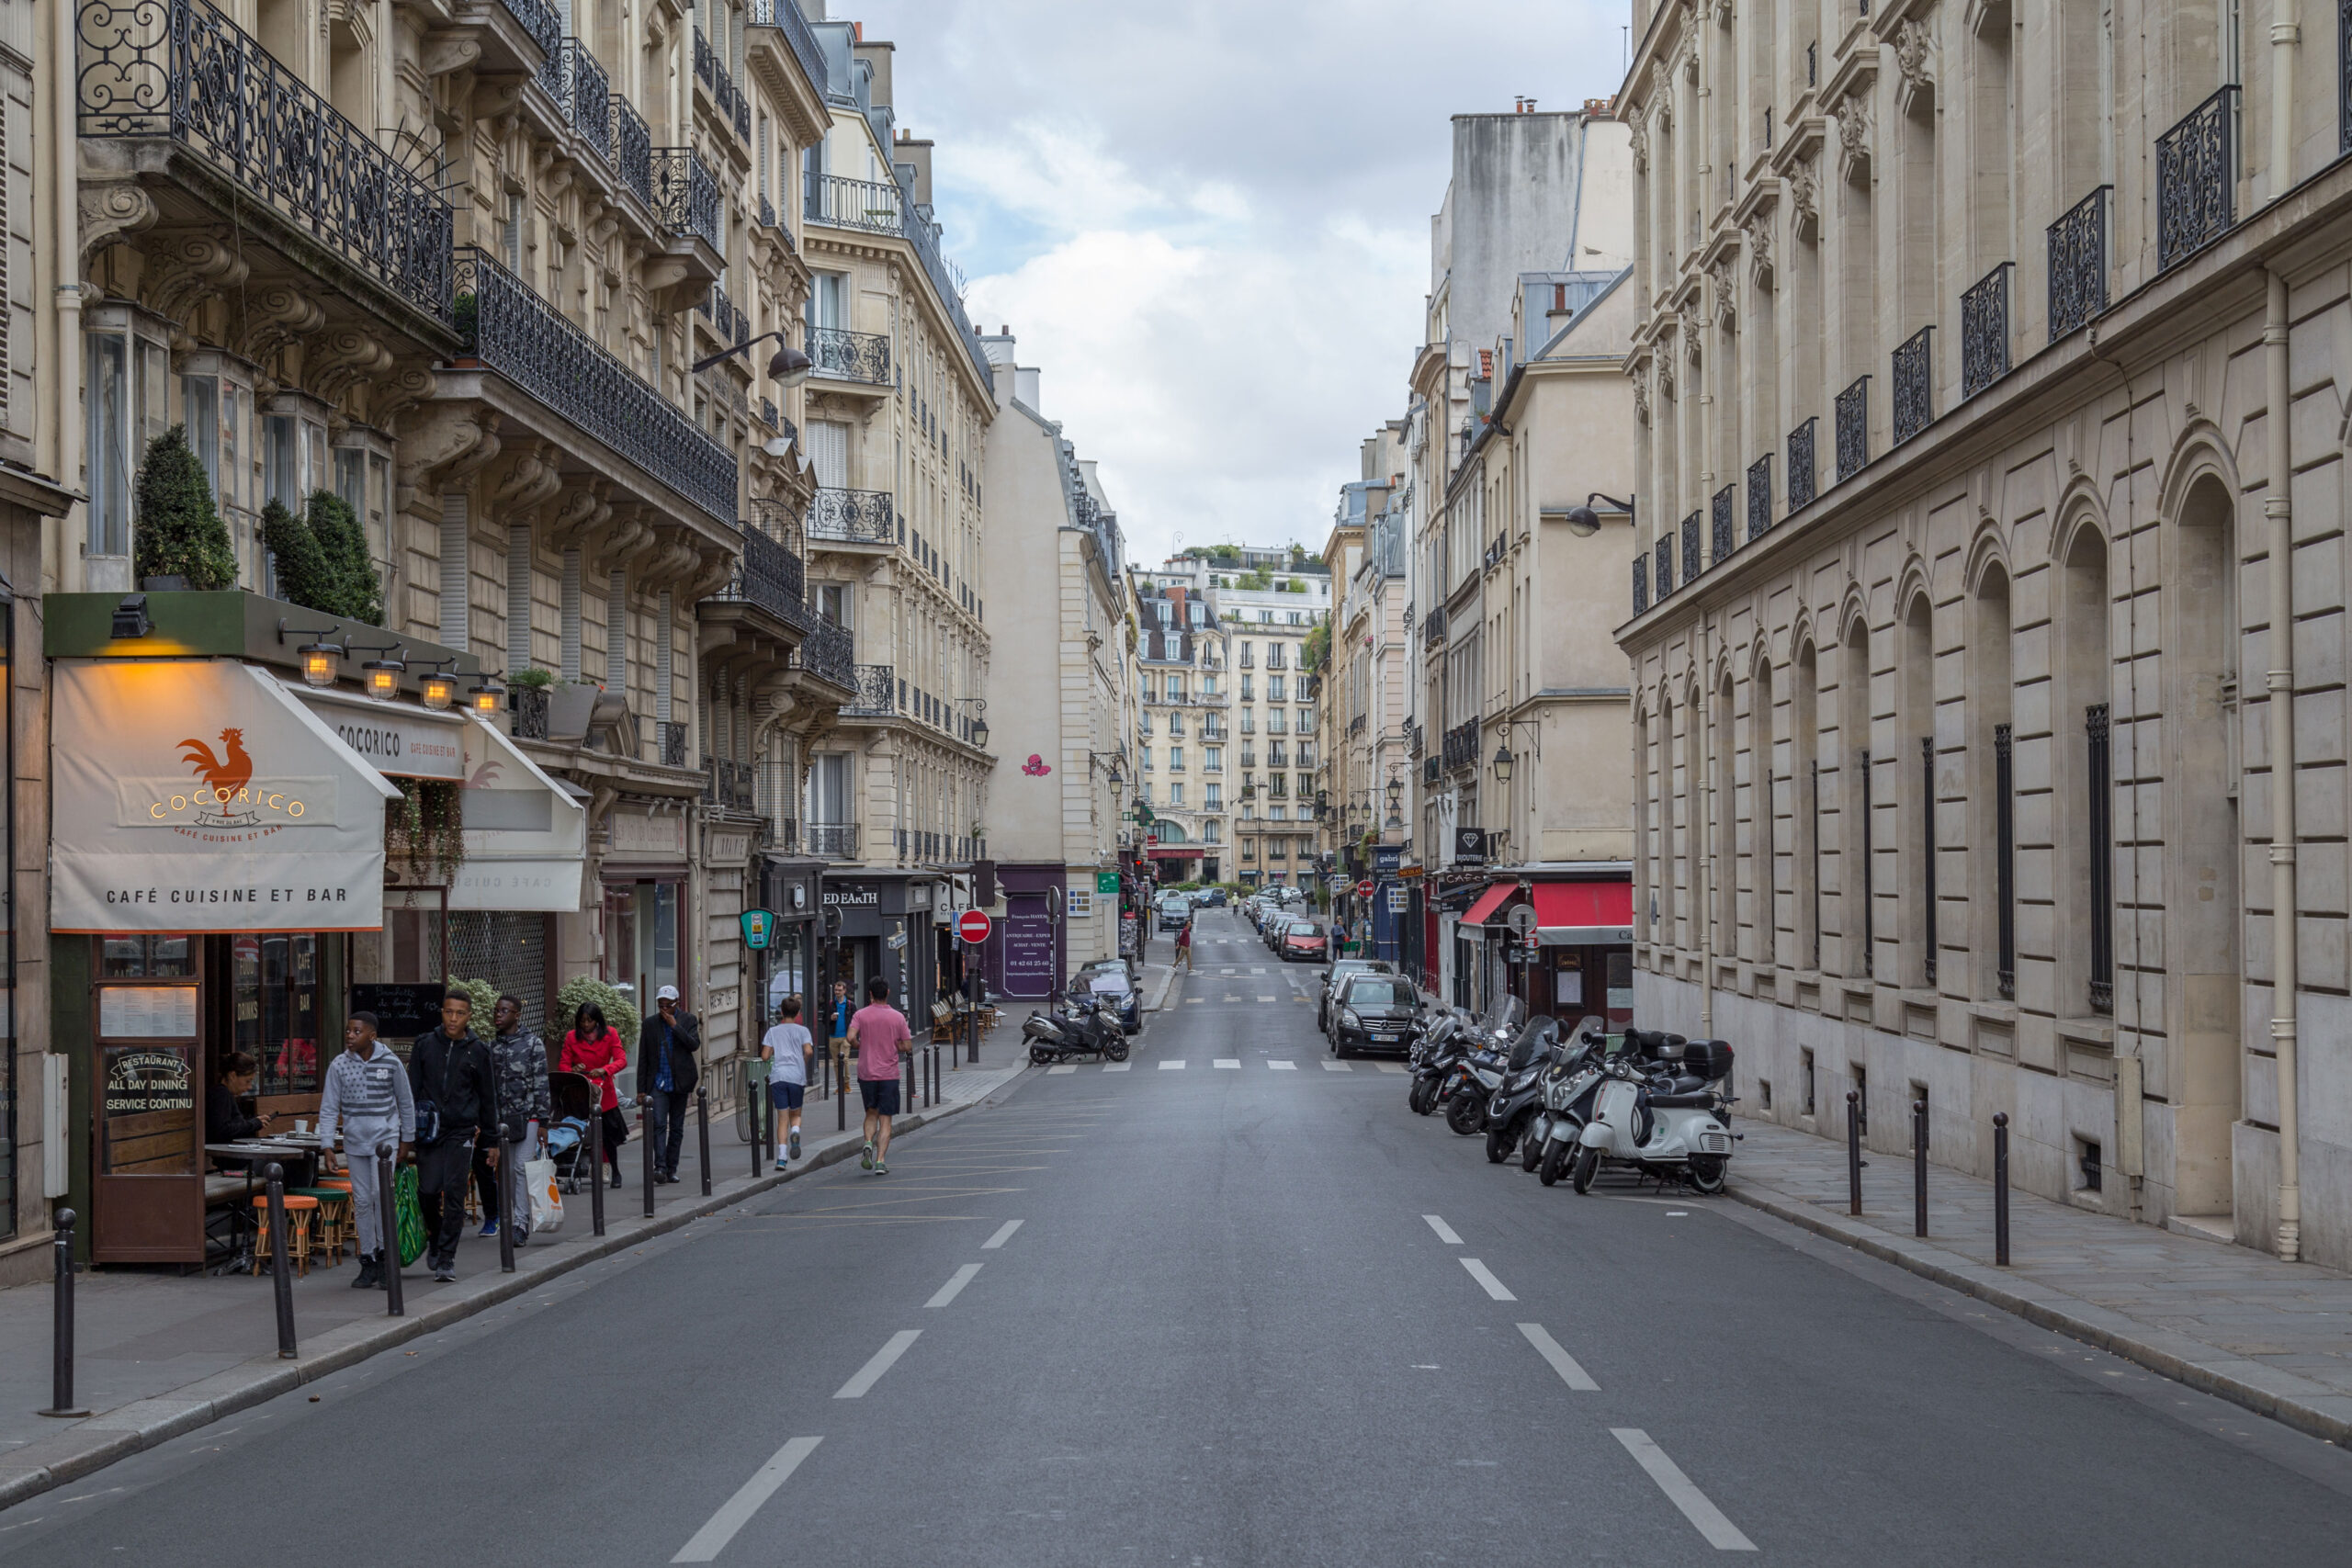 St. Germain i Paris: anbefalede områder